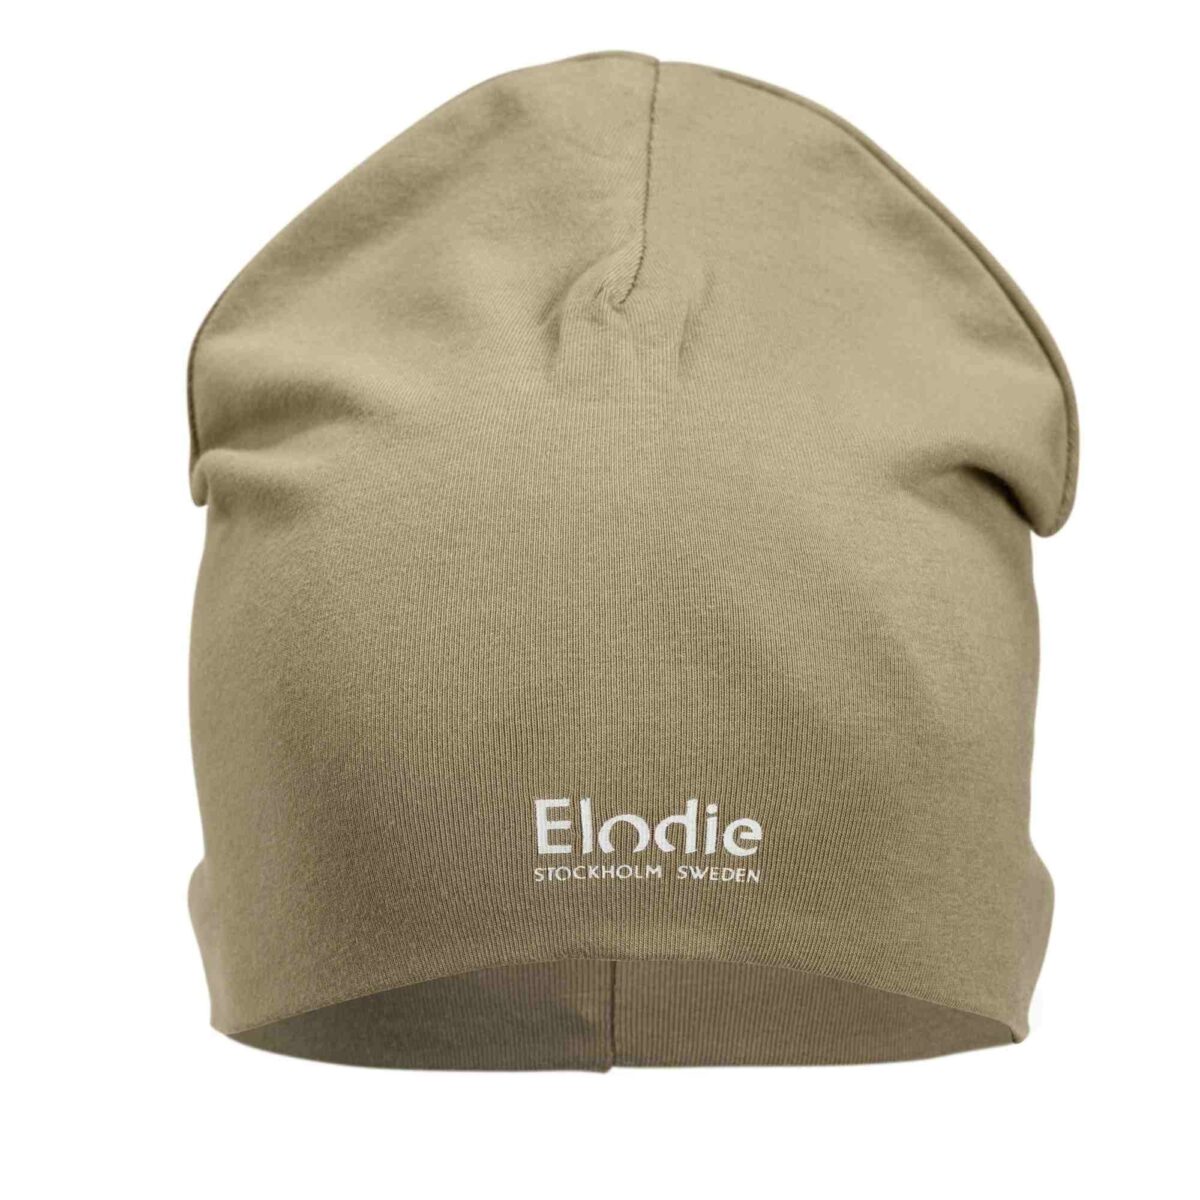 Elodie Details - Logo Beanie - Warm Sand 0-6 Months - Ubrania I Akcesoria &Gt; Ubrania &Gt; Ubrania Dla Dzieci I Niemowląt